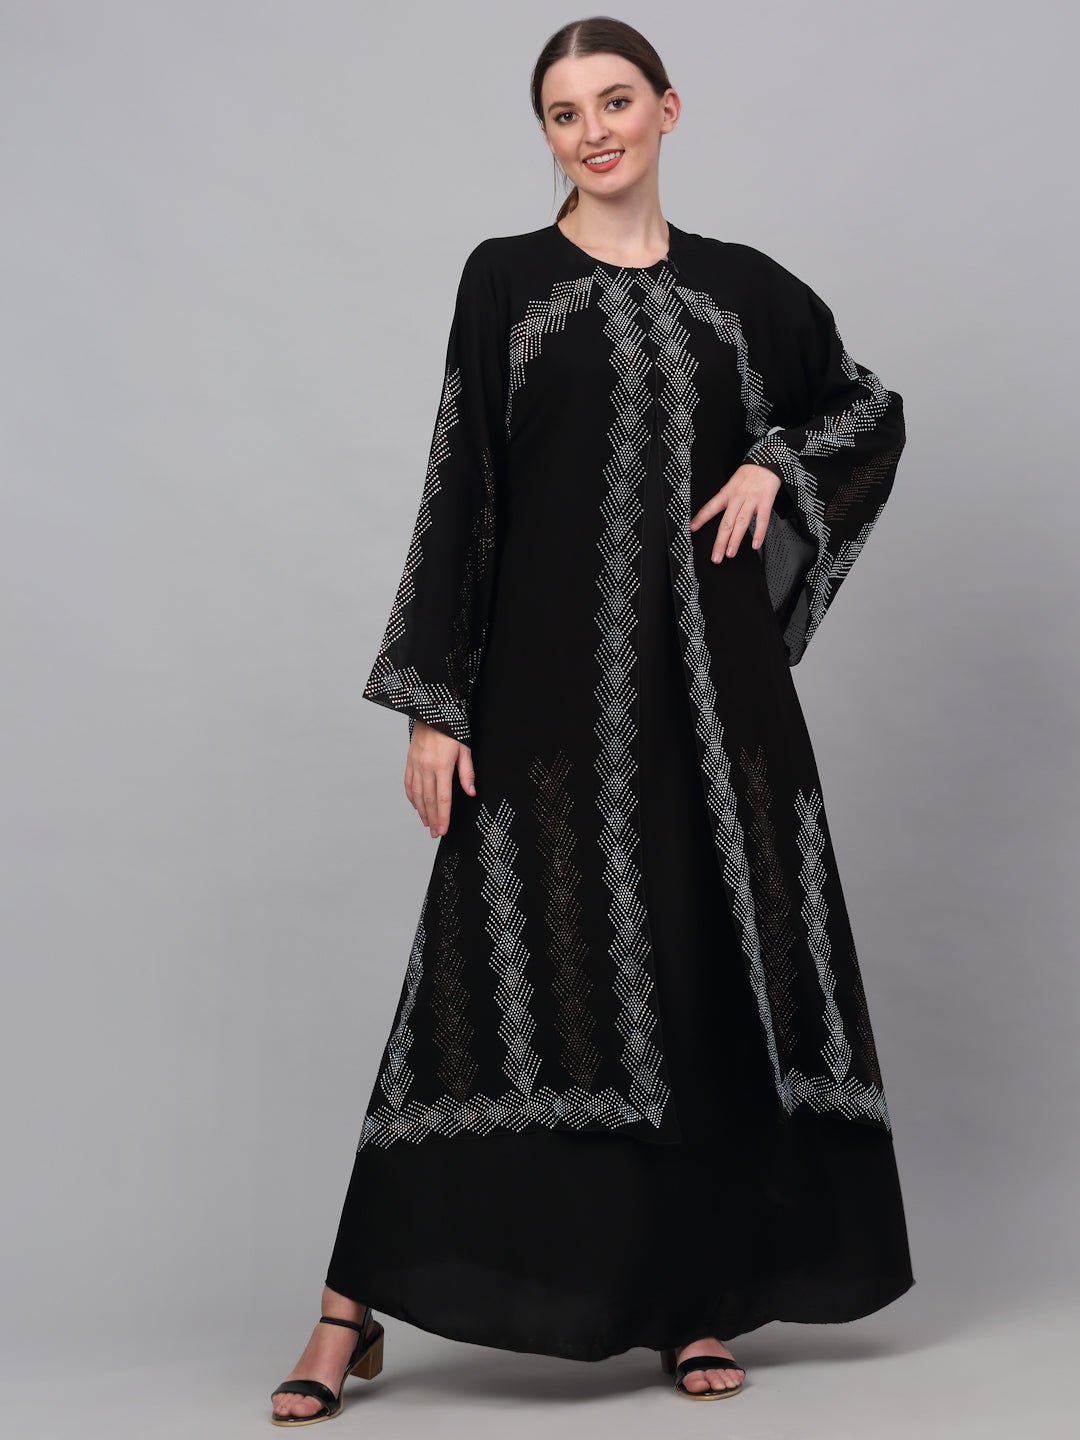 Klotthe Women Black Embellished Burqa With Scarves